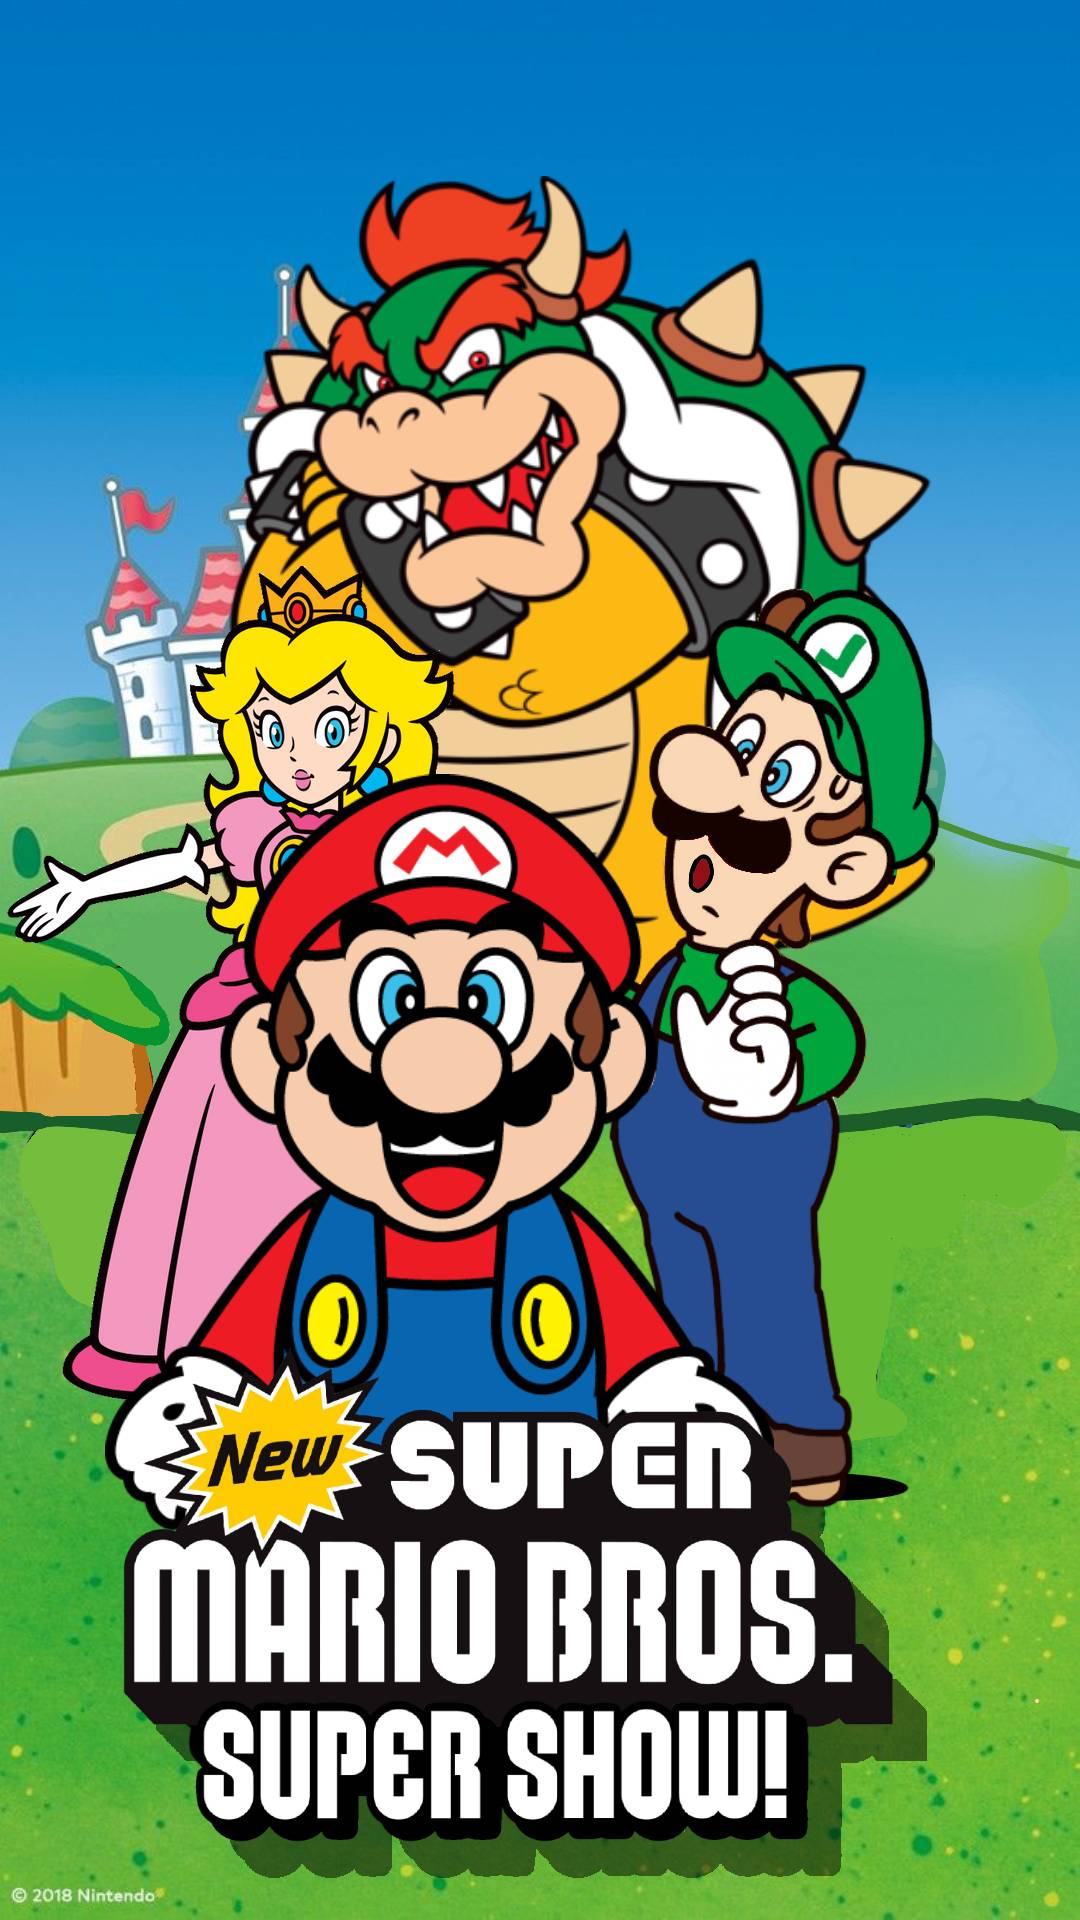 Super Mario 64: EA Version 